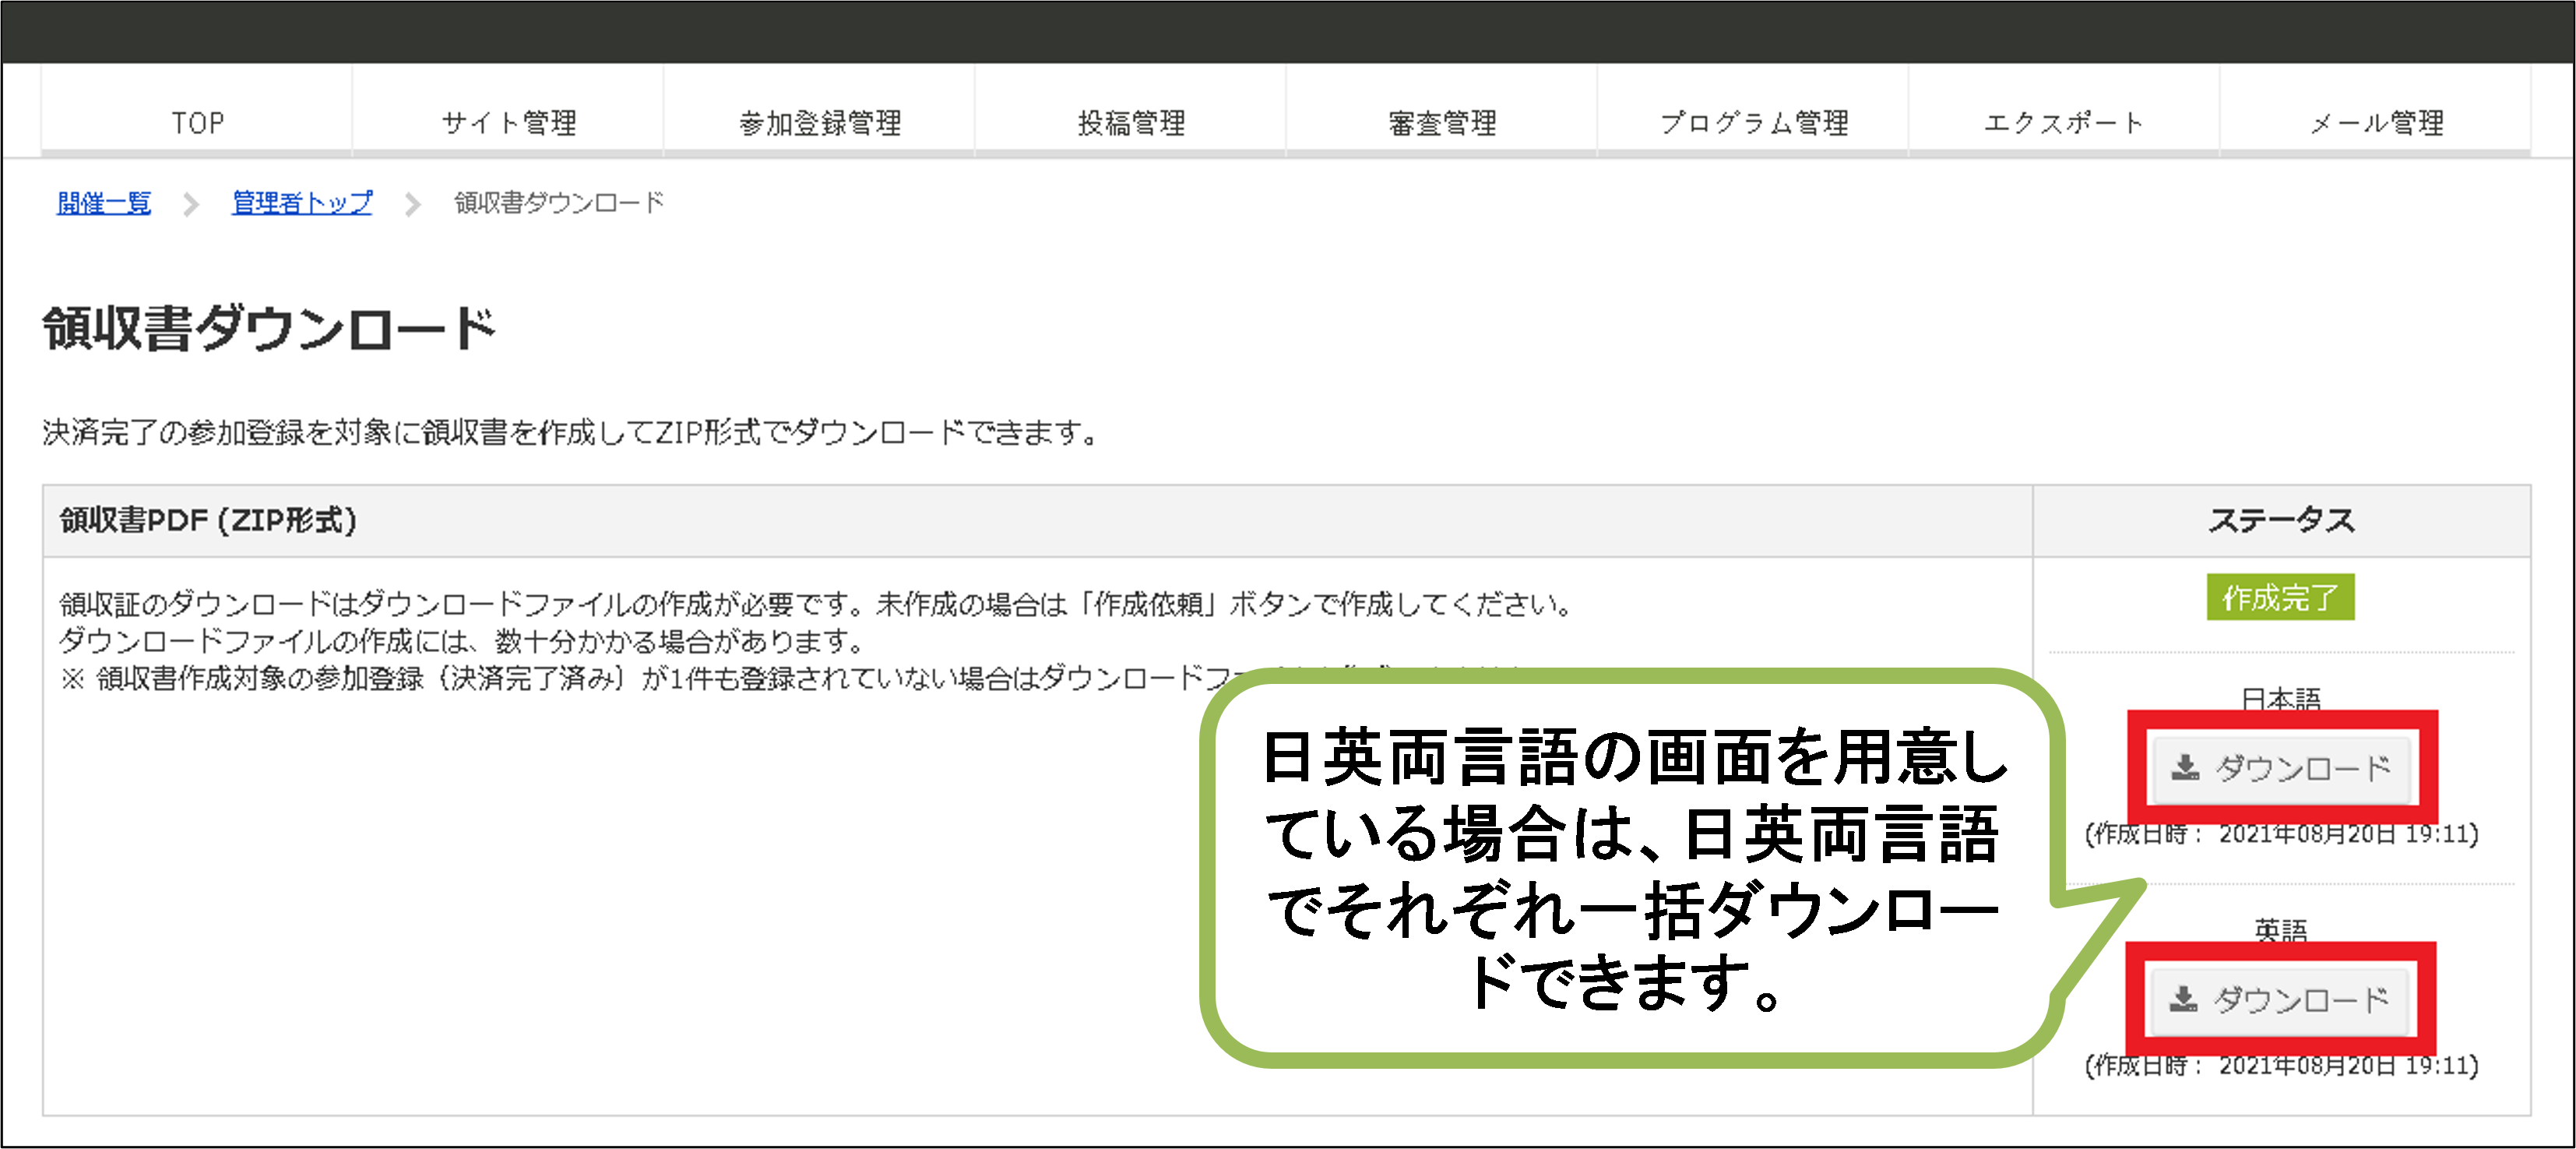 領収書のダウンロード画面。日英両言語の画面を用意している場合は、日英両言語でそれぞれ一括ダウンロードできる。